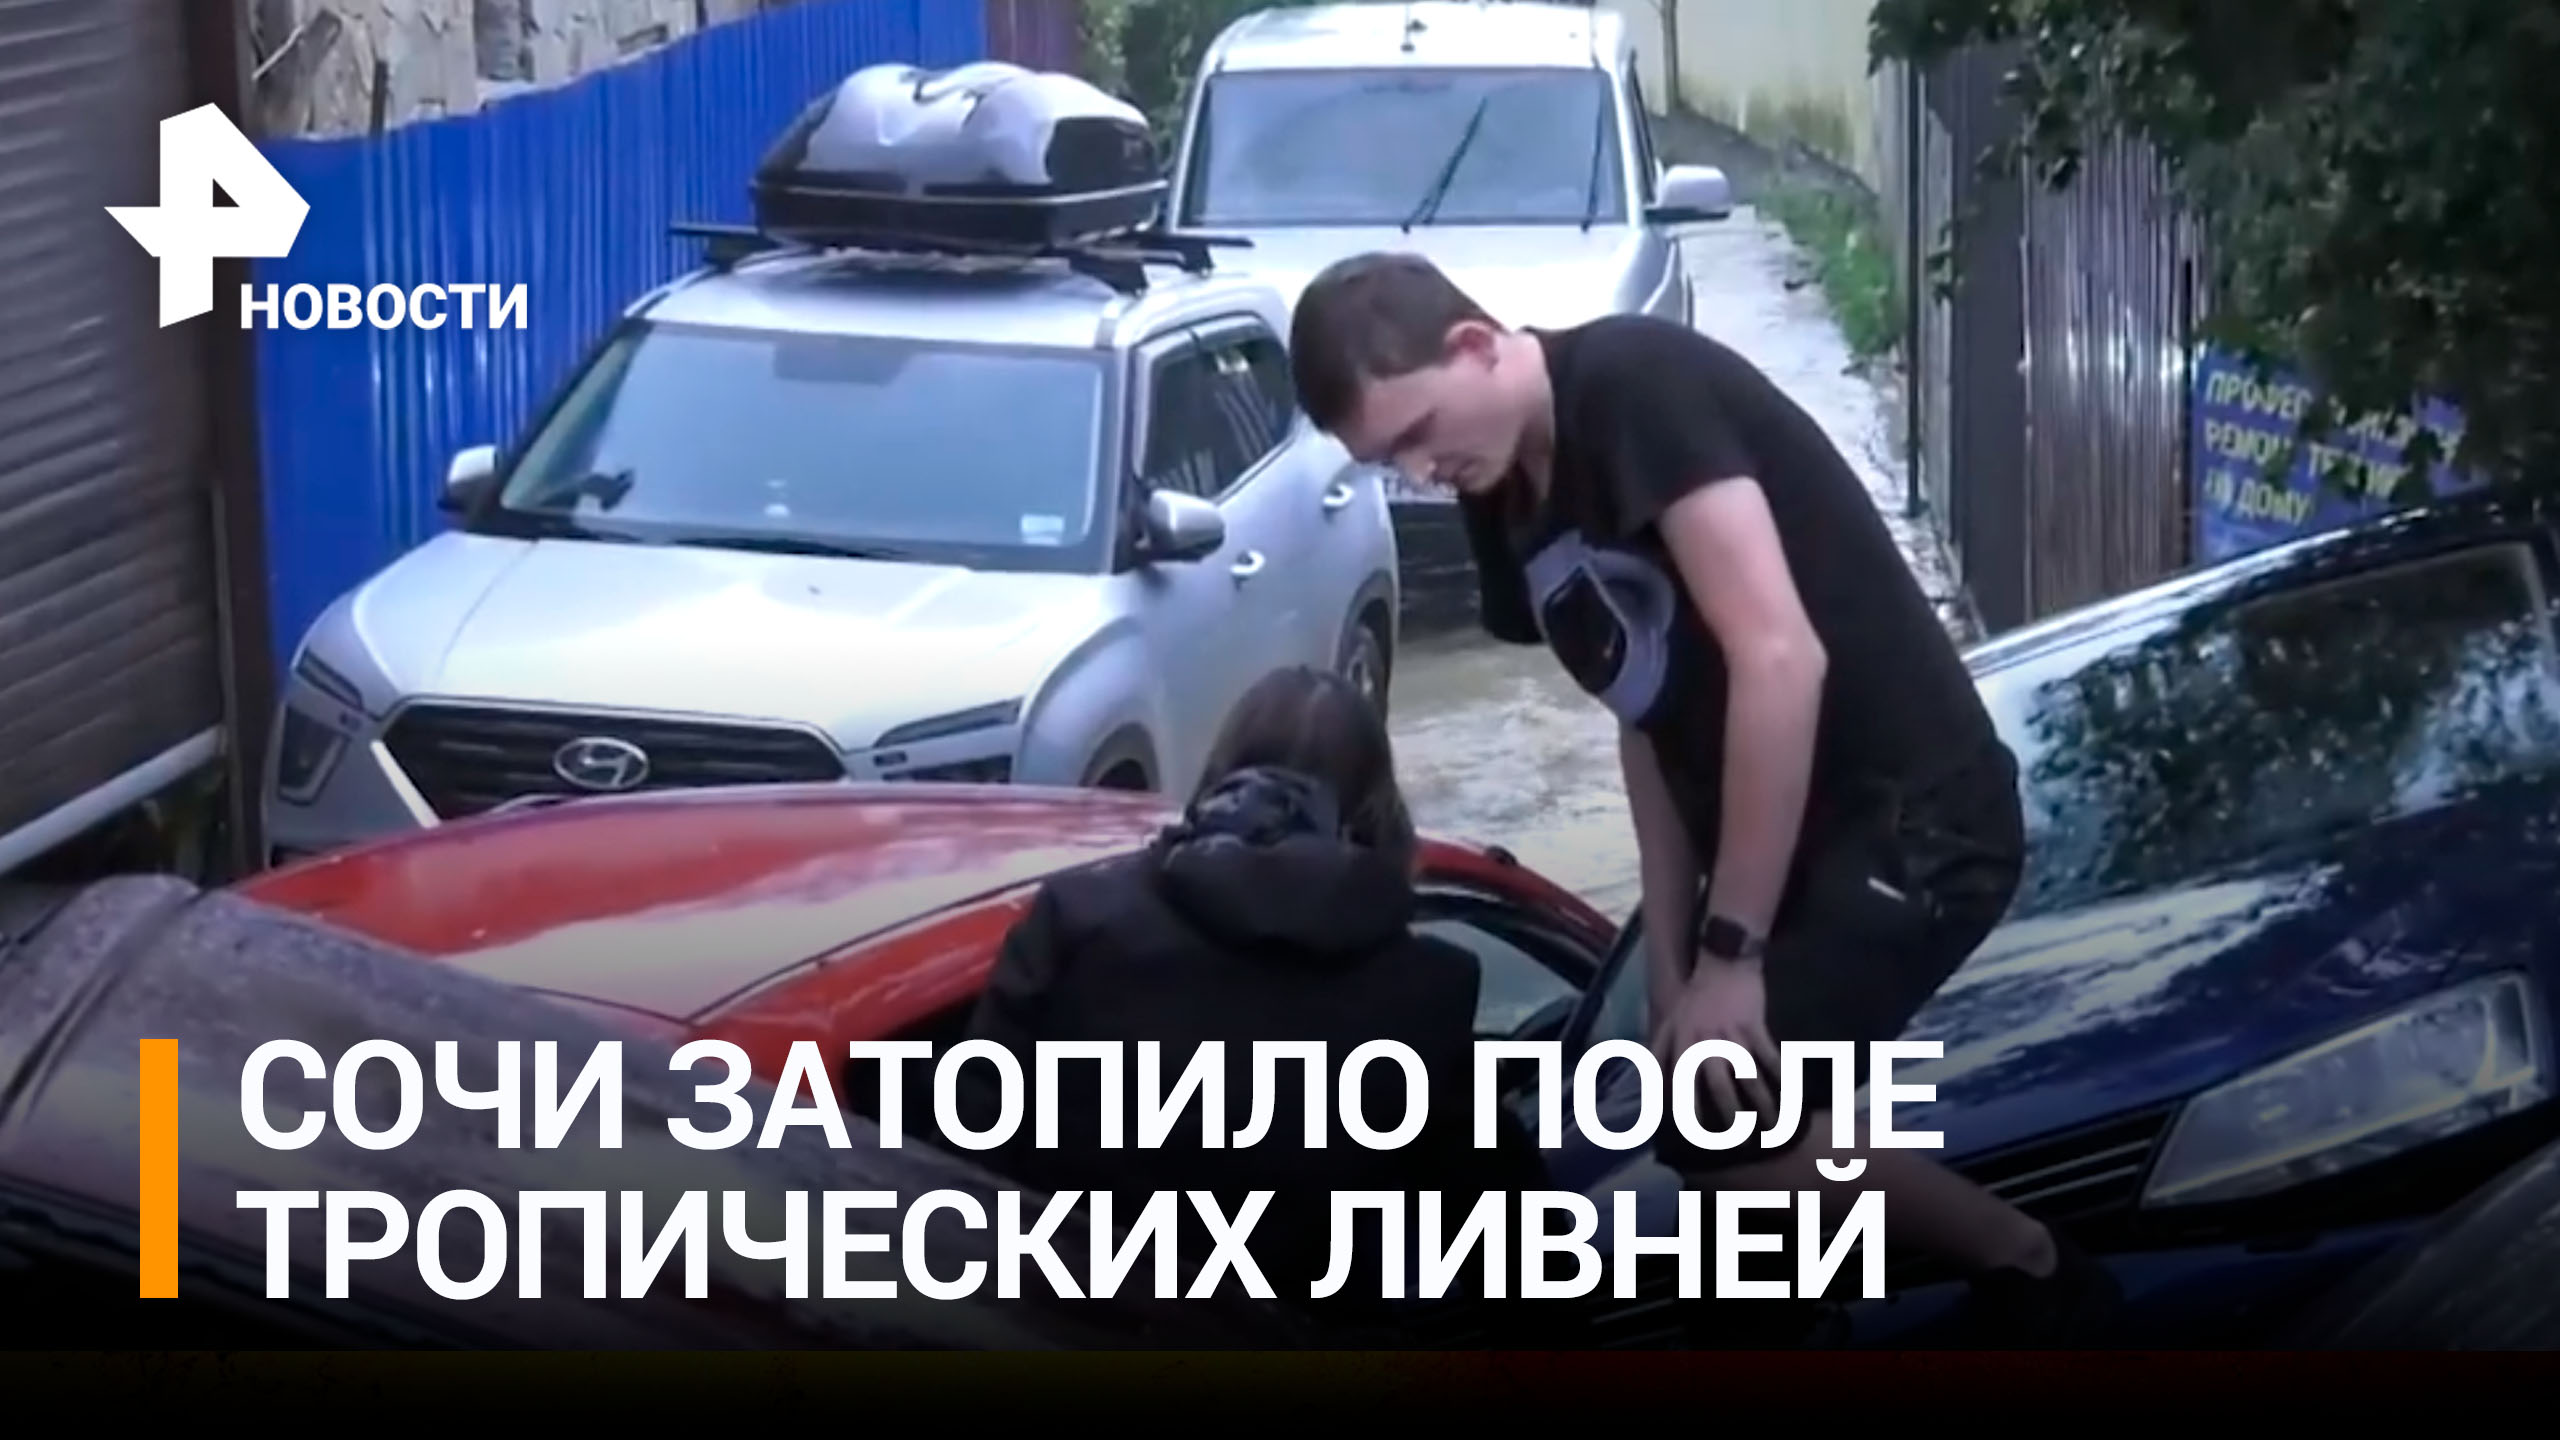 Машины уплыли: Сочи затопило после мощных ливней / РЕН Новости